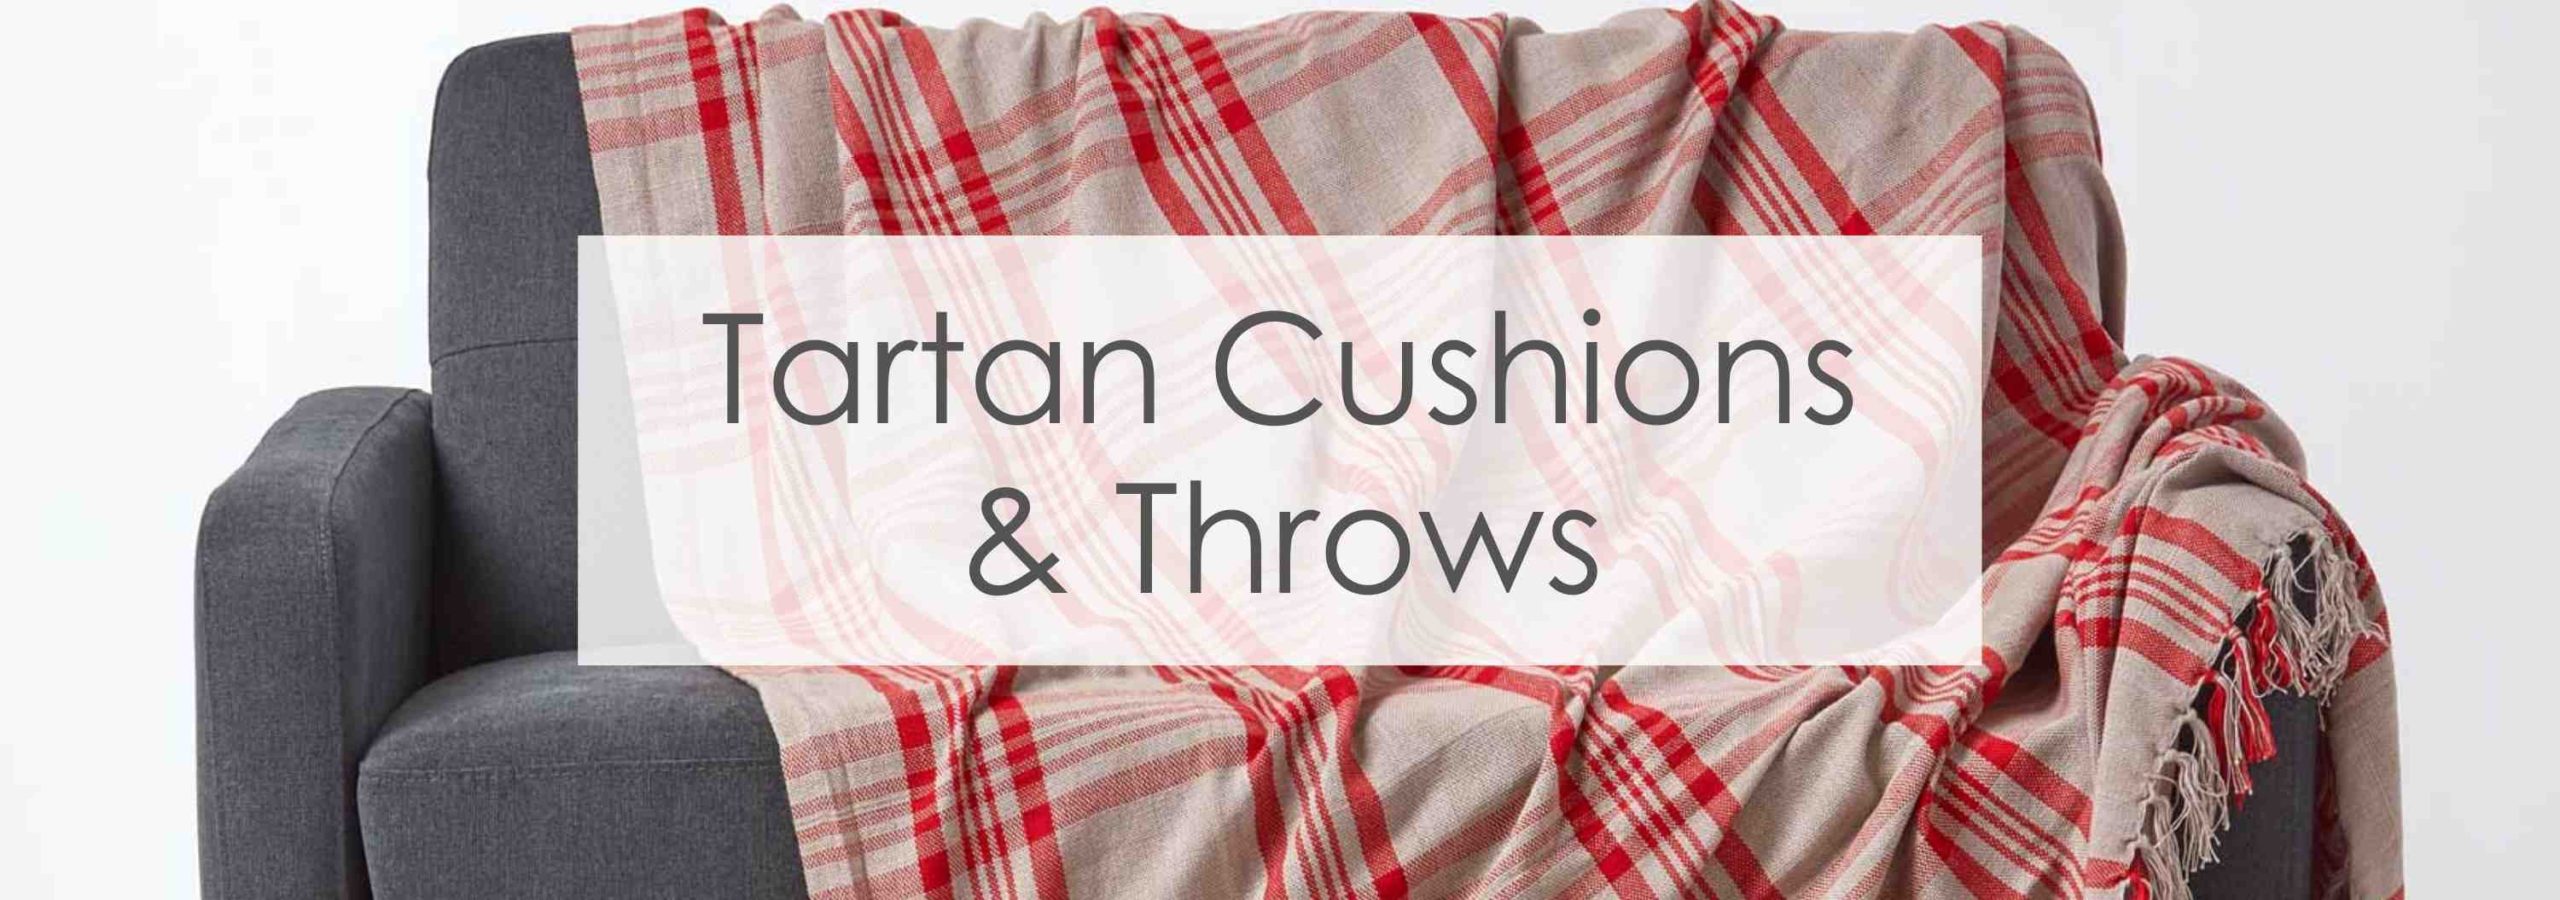 Tartan cushions and throws banner